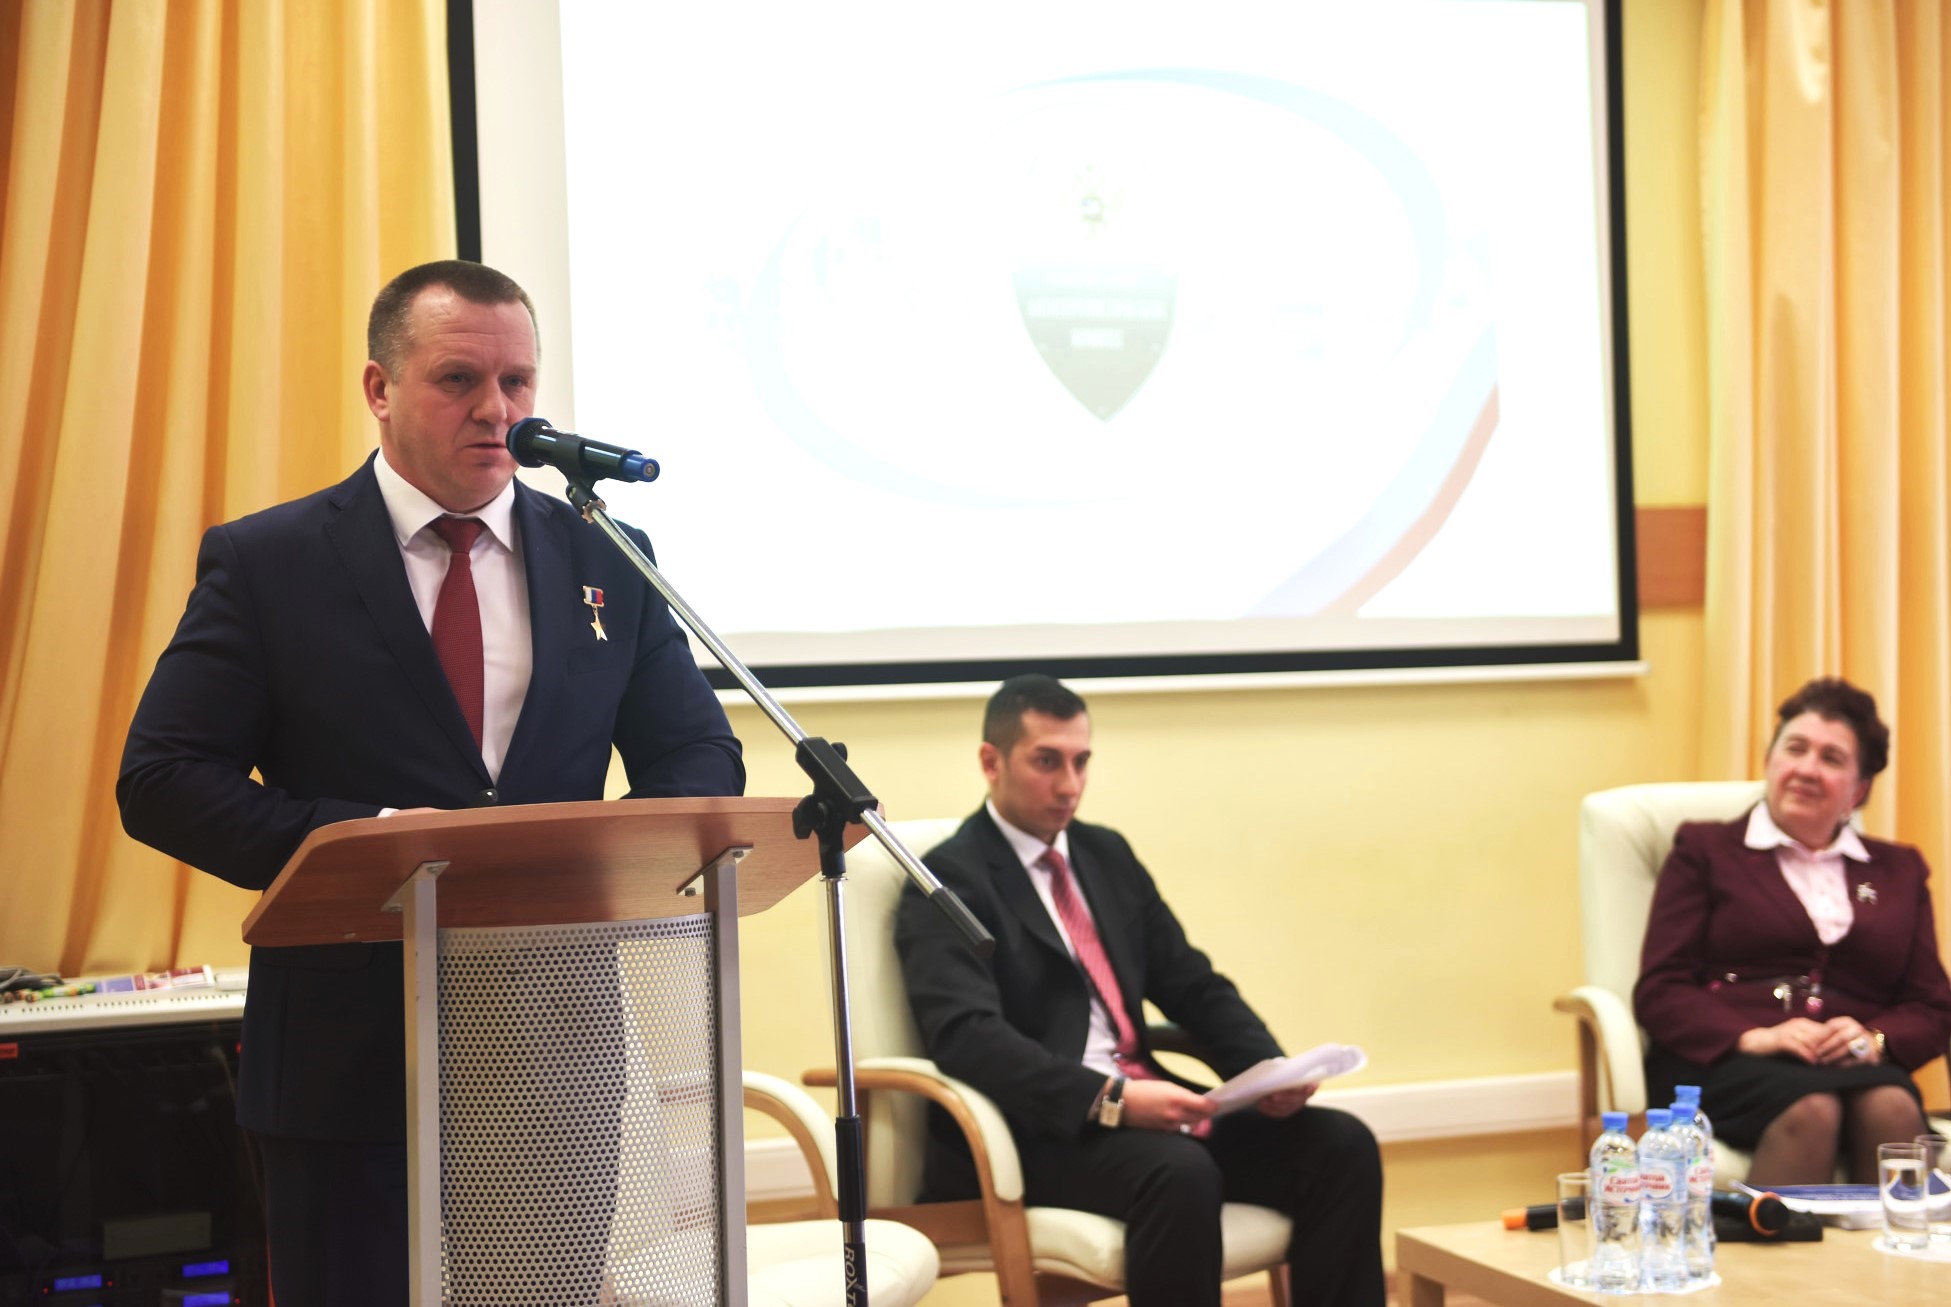 Хмелёв О.П. выступает на конференции по безопасности в МГУТУ, 2019 год